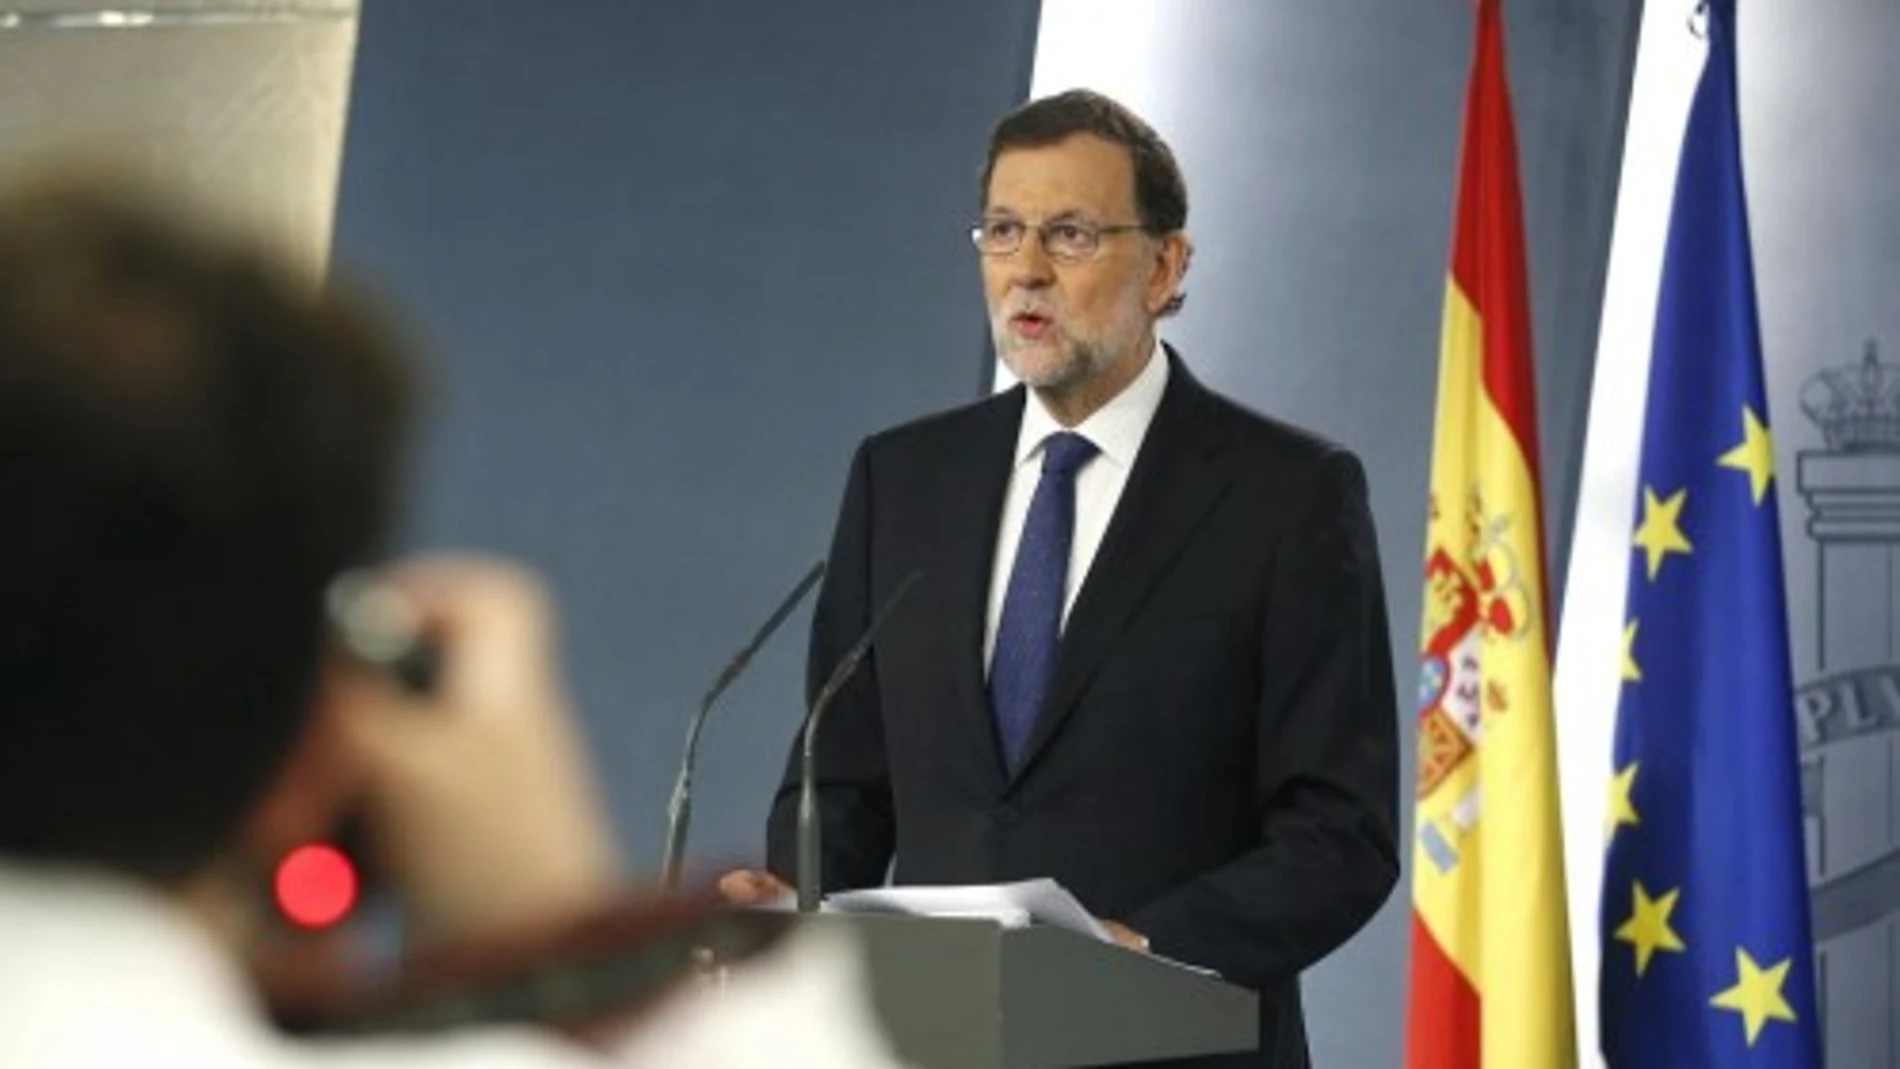 El presidente del Gobierno, Mariano Rajoy, durante su comparecencia a primera hora de la mañana en el Palacio de La Moncloa, tras el Brexit.